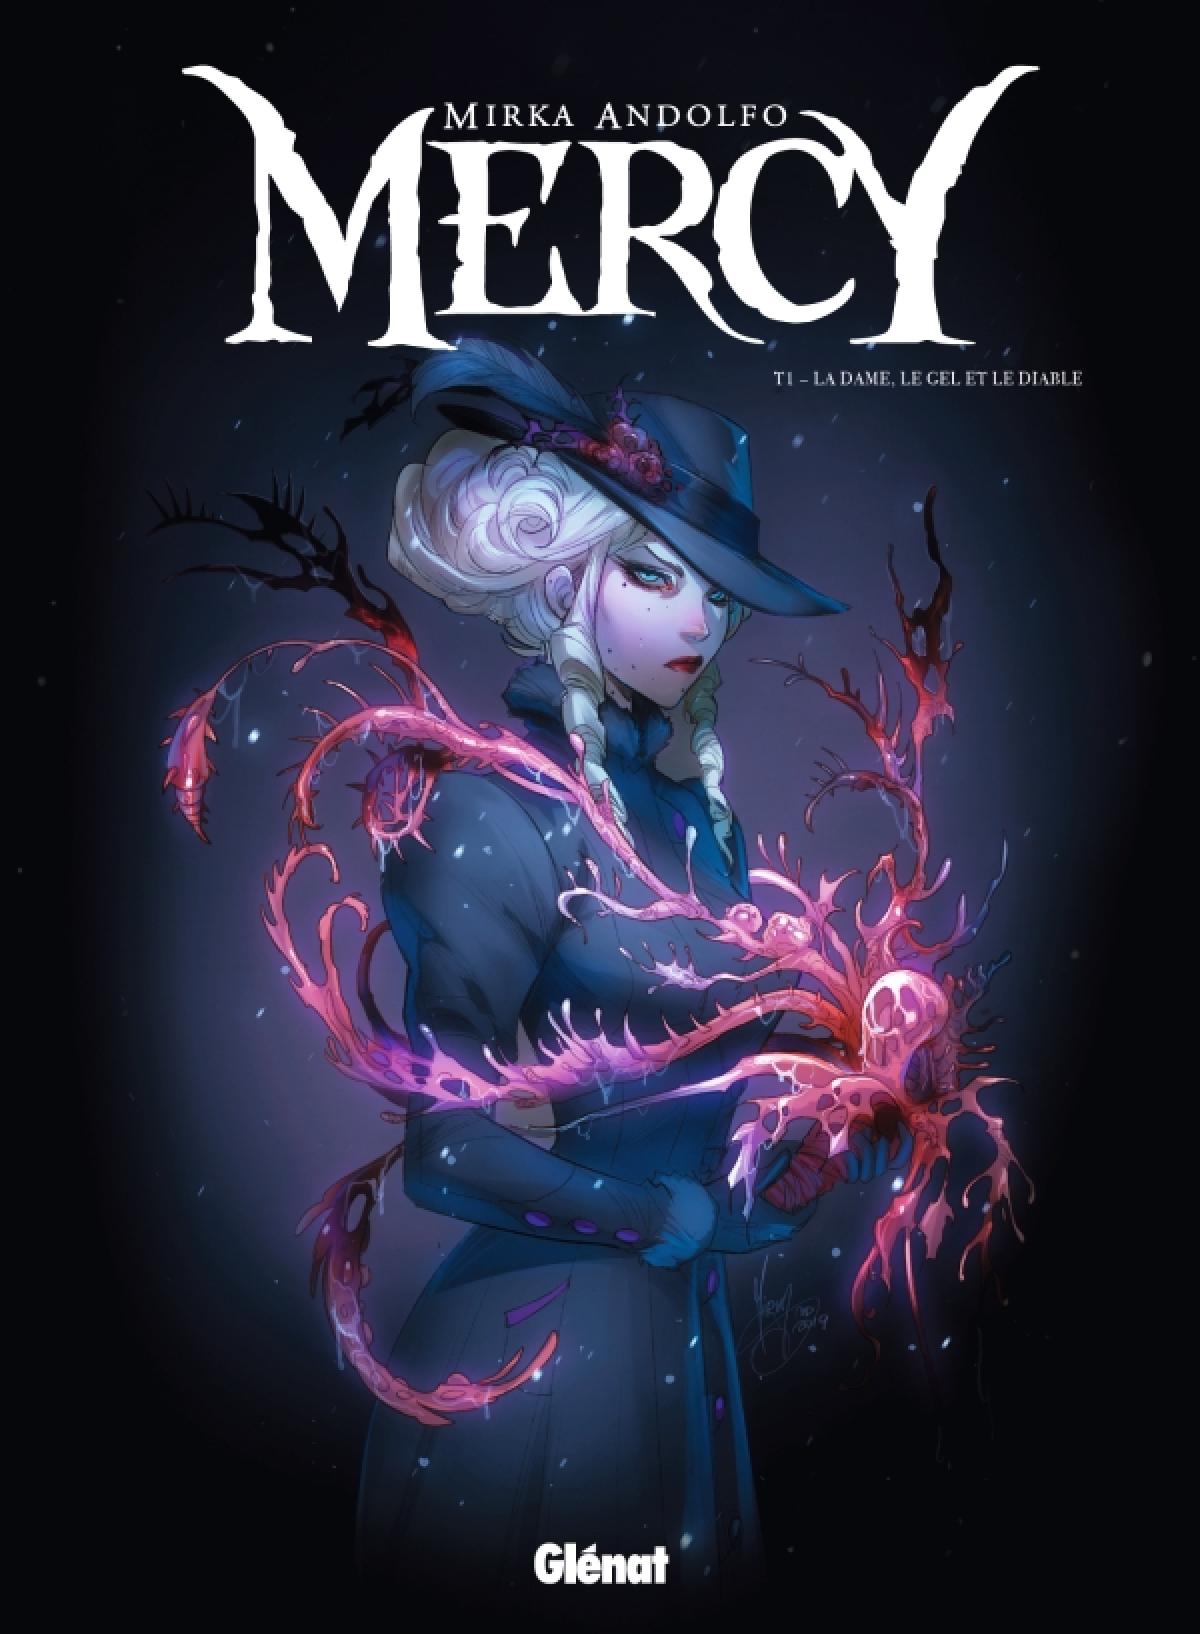 Mercy – Mirka Andolfo (Glénat)